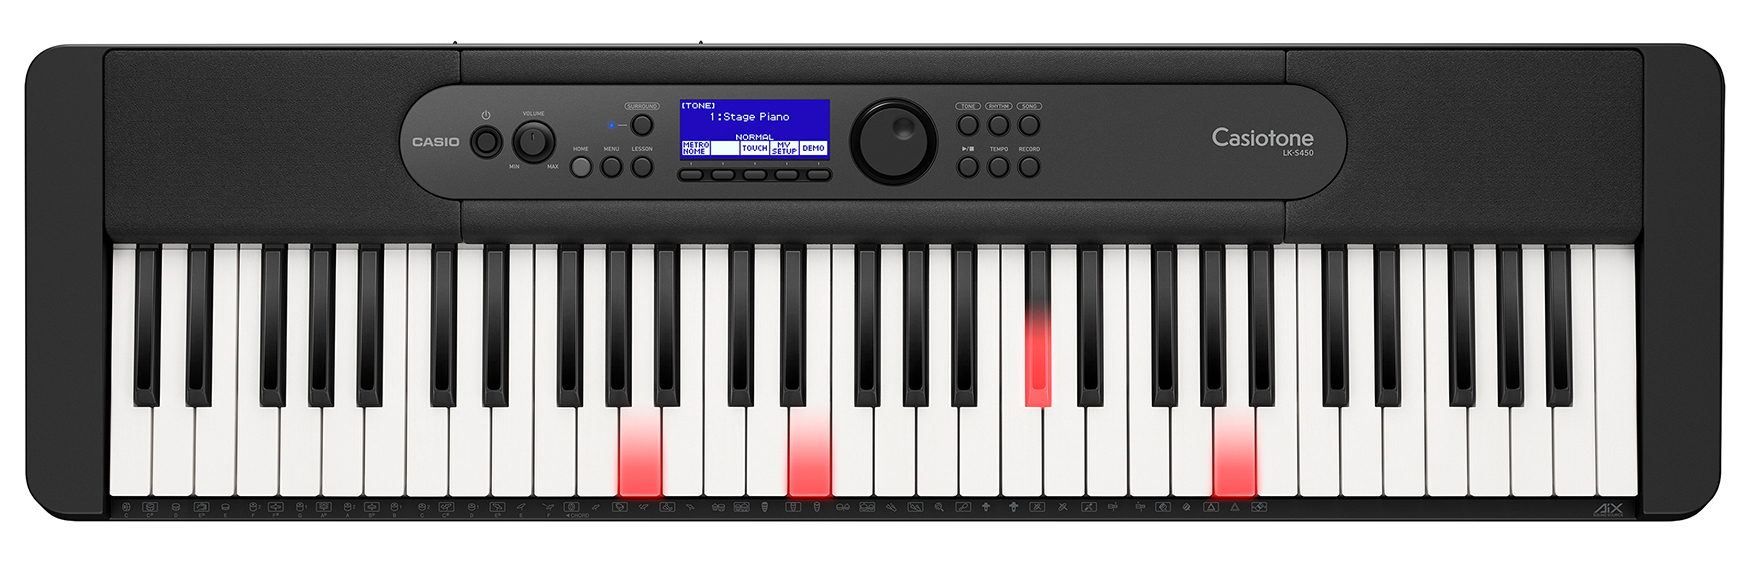 Billede af Casio LK-S450 Keyboard med lys i tangenterne